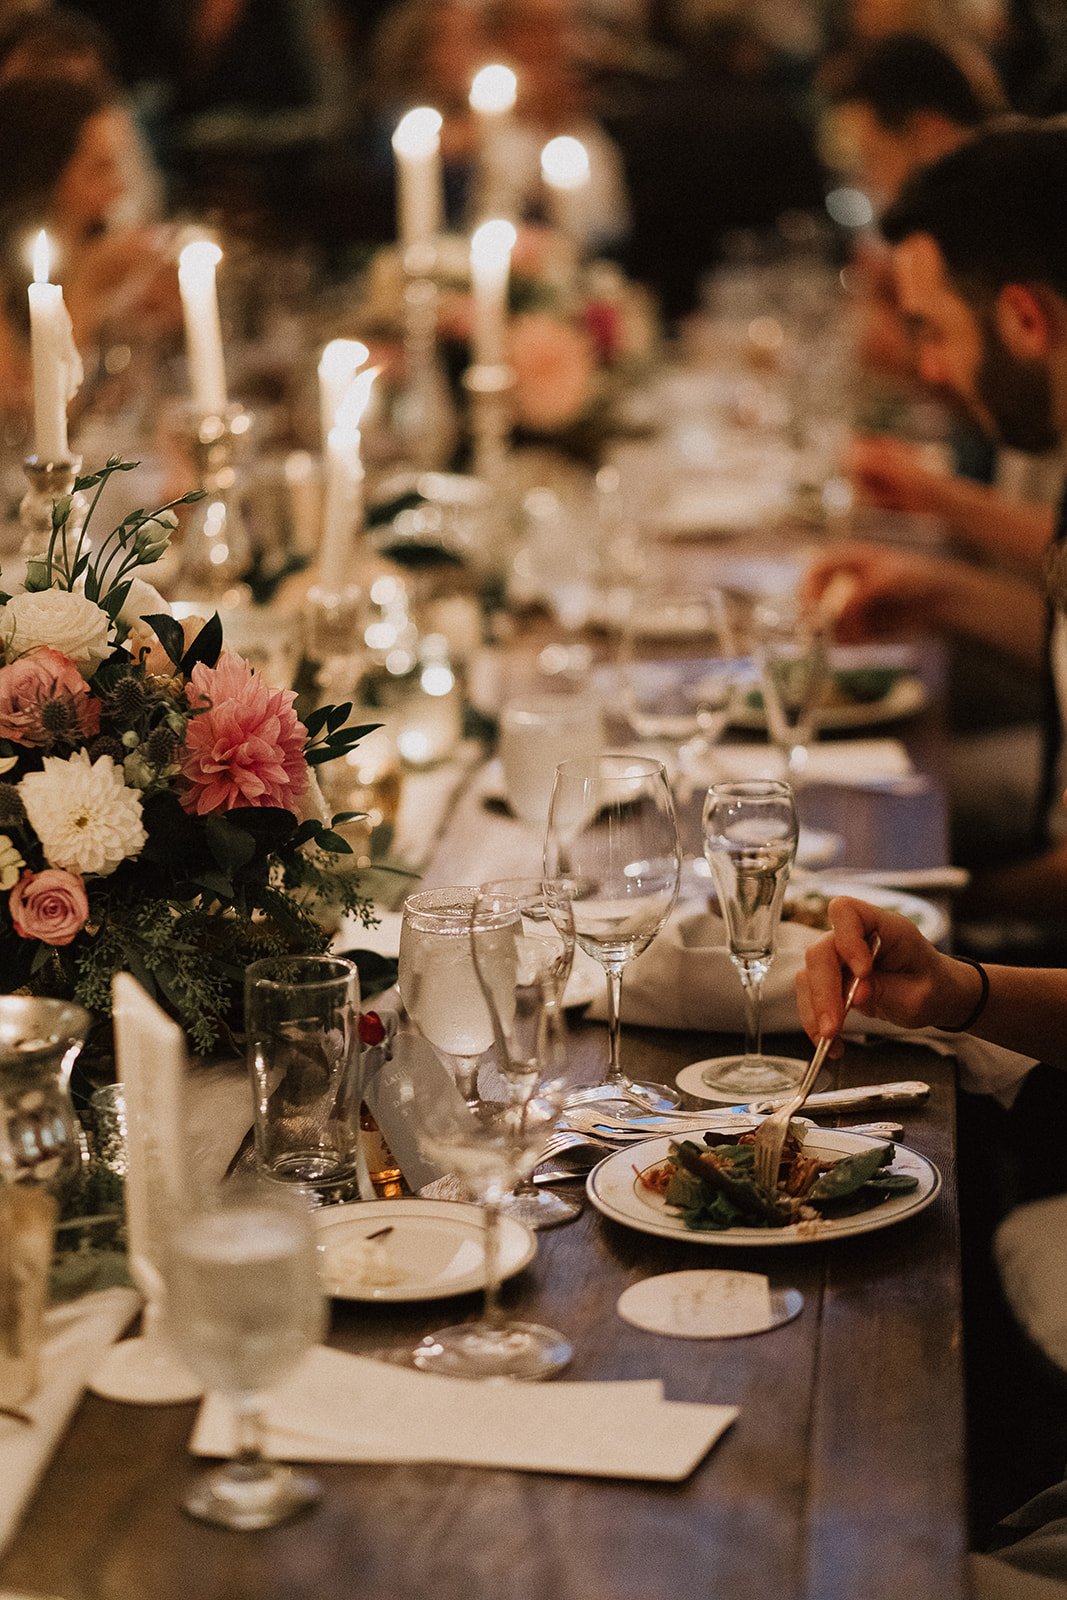 Candlelit wedding reception